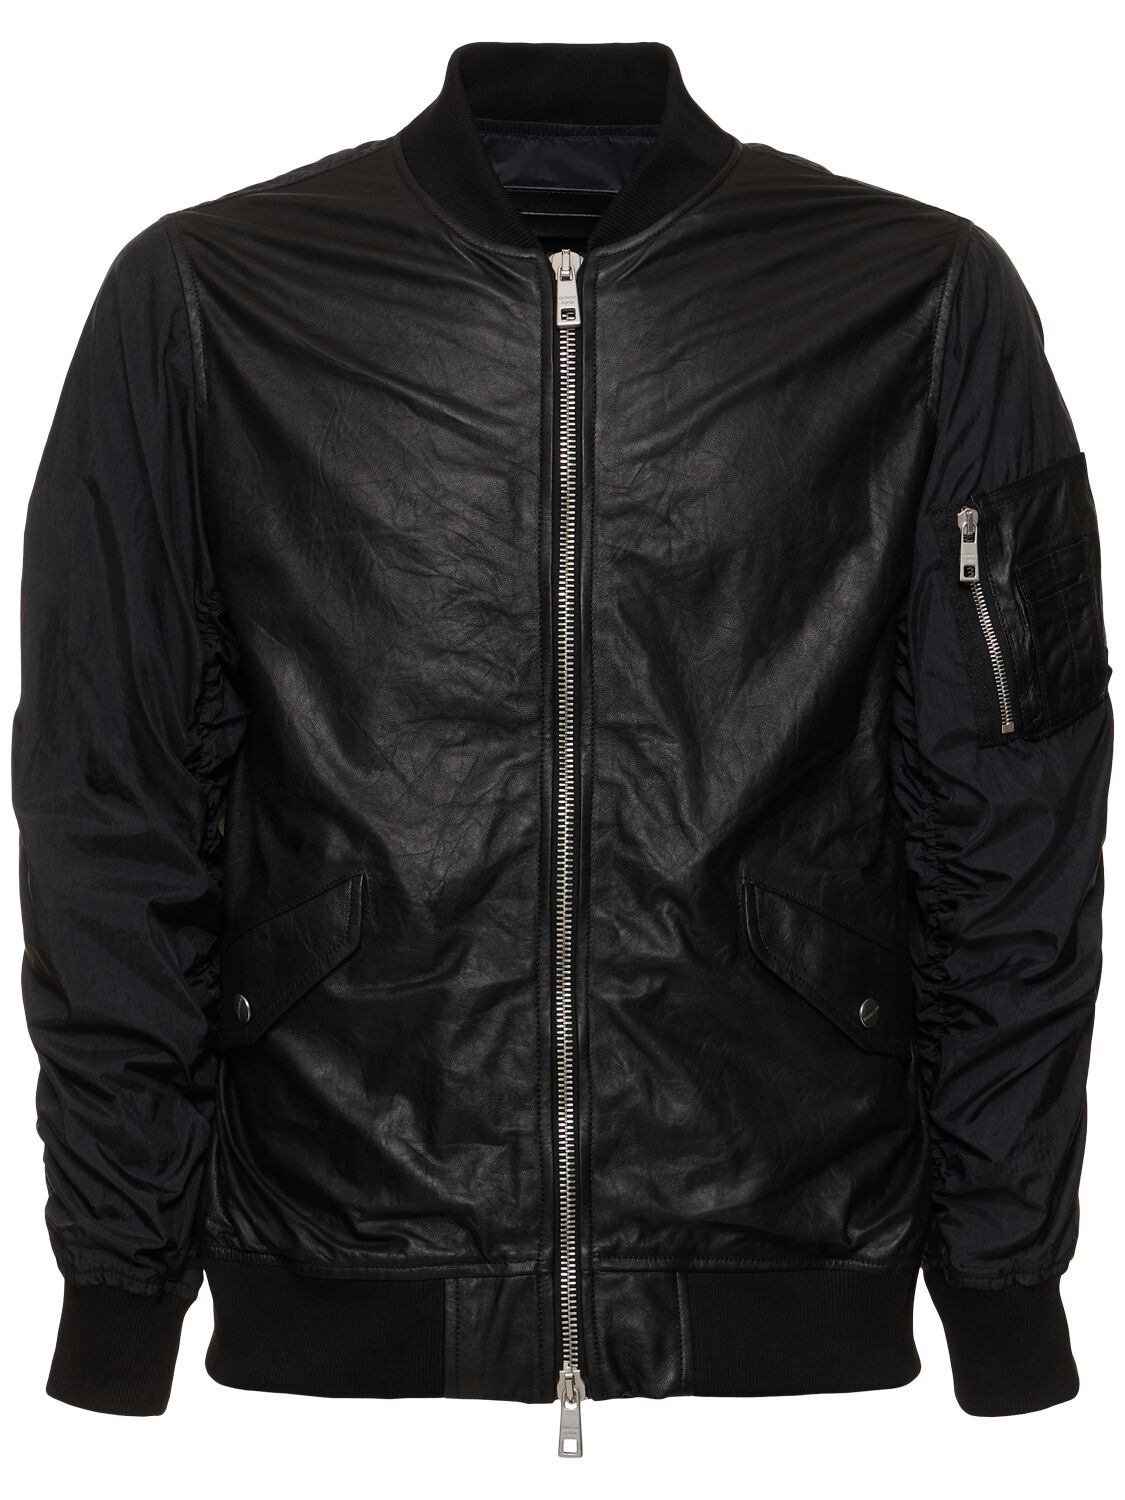 Image of Wrinkled Leather & Nylon Bomber Jacket